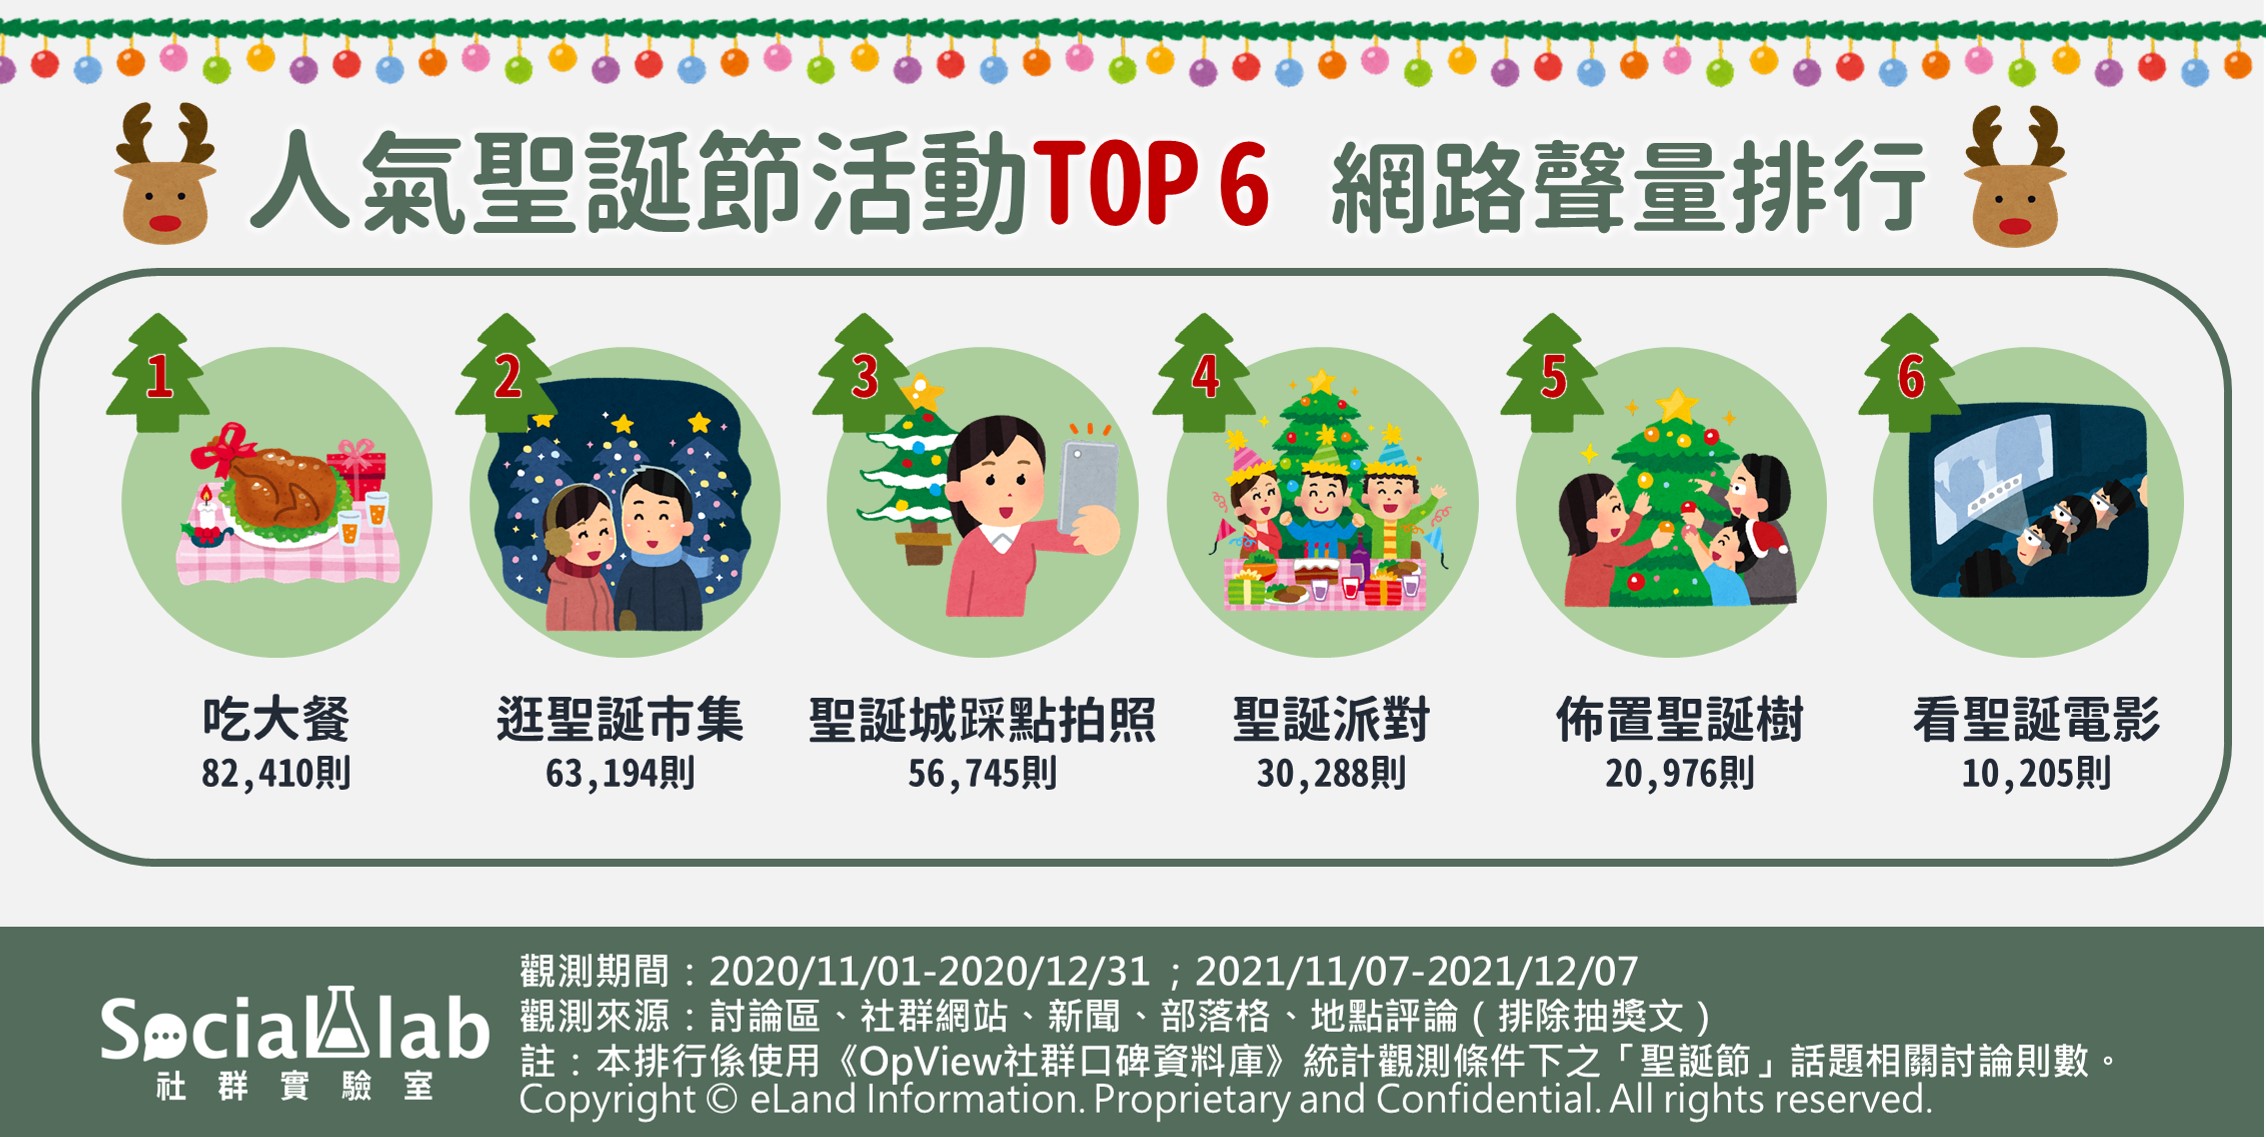 人氣聖誕節活動TOP6網路聲量排行